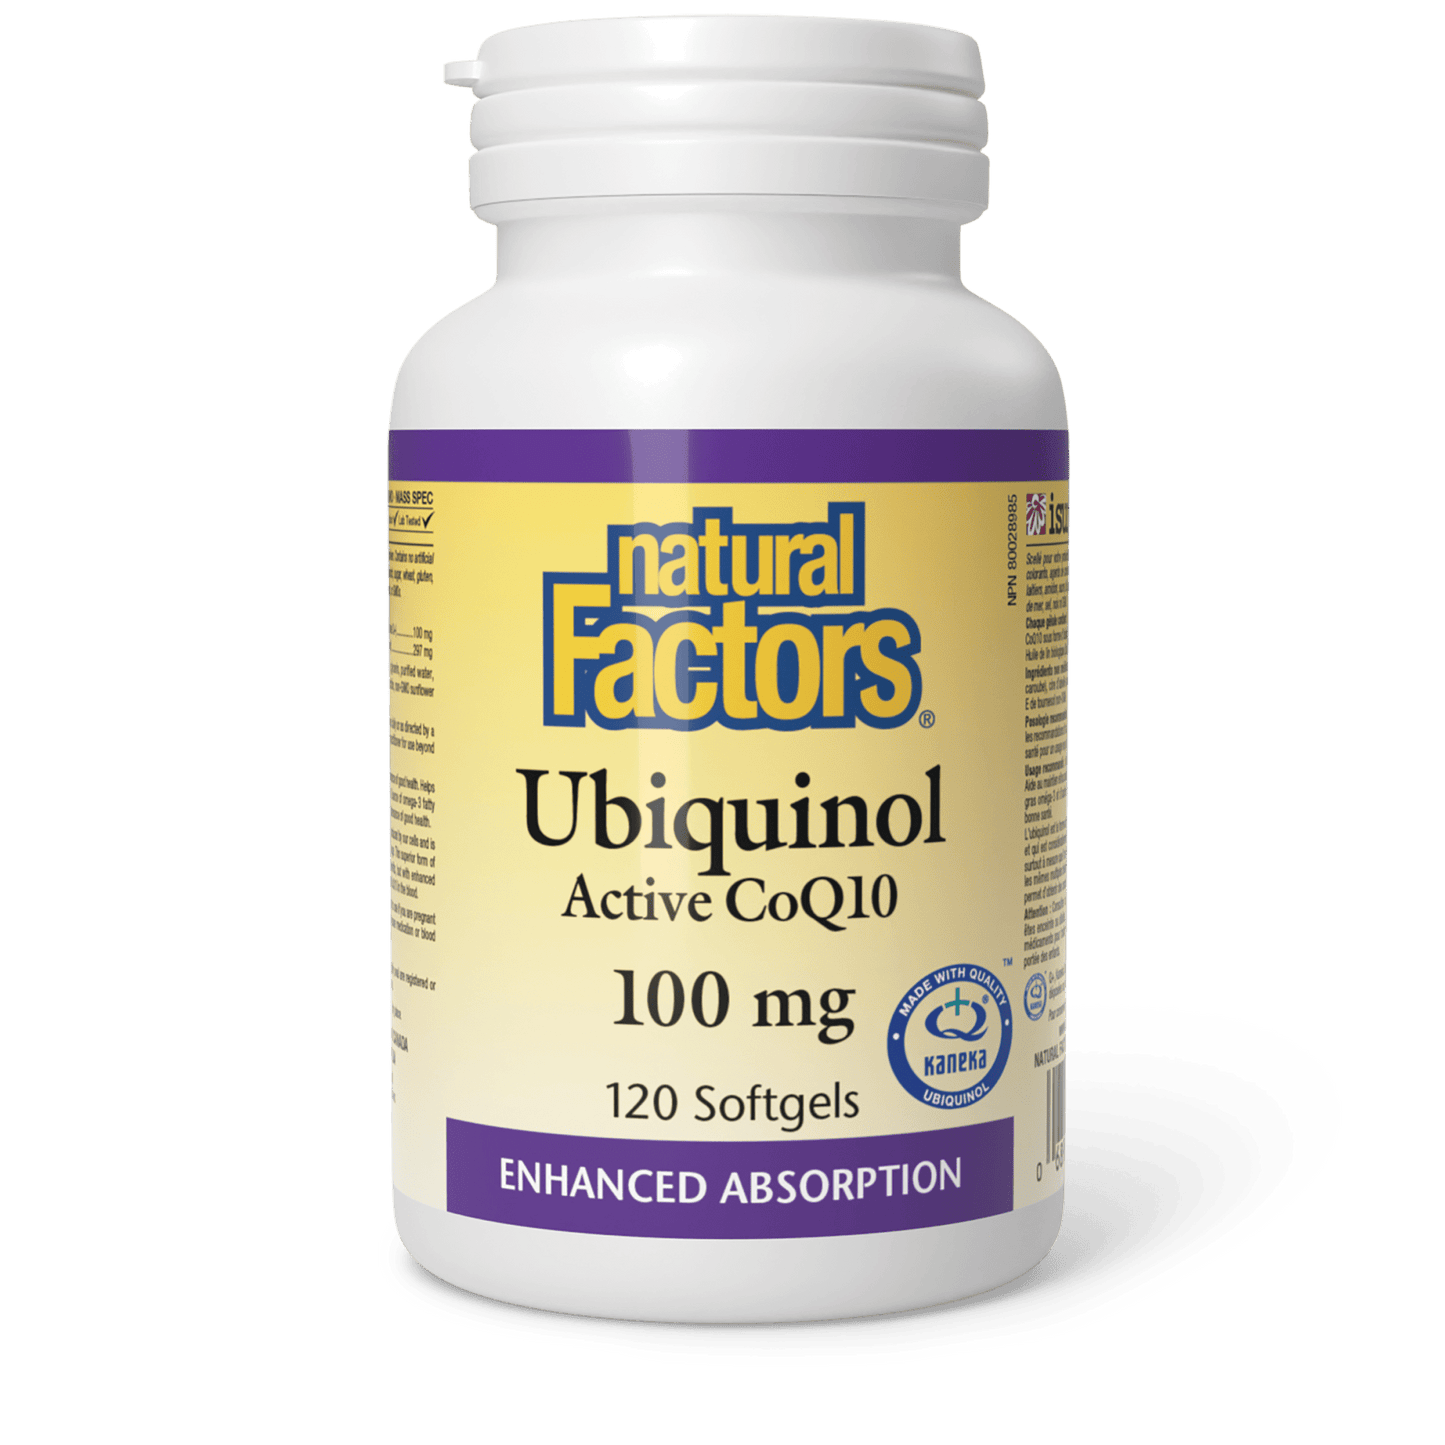 Ubiquinol Active CoQ10 100 mg, Natural Factors|v|image|20728